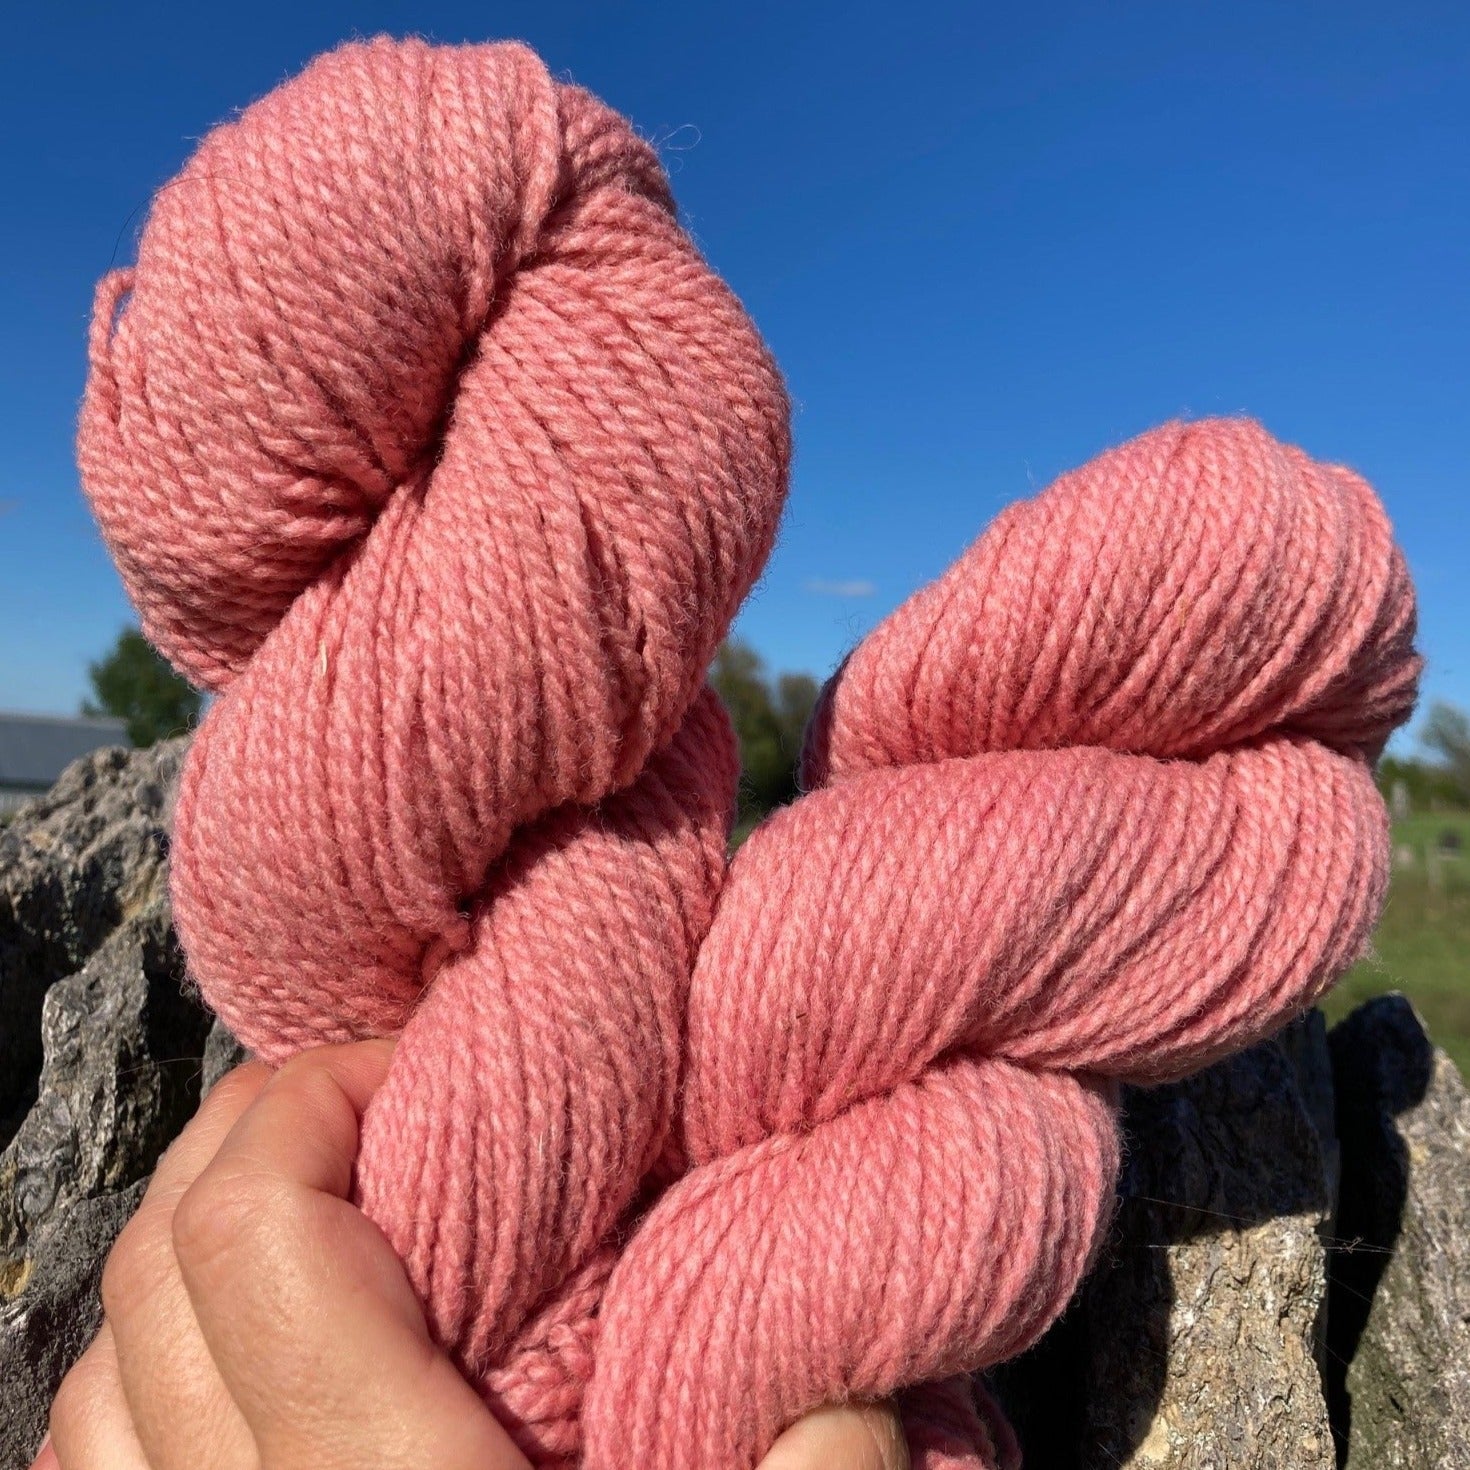 Topsy Farms' soft pink yarn